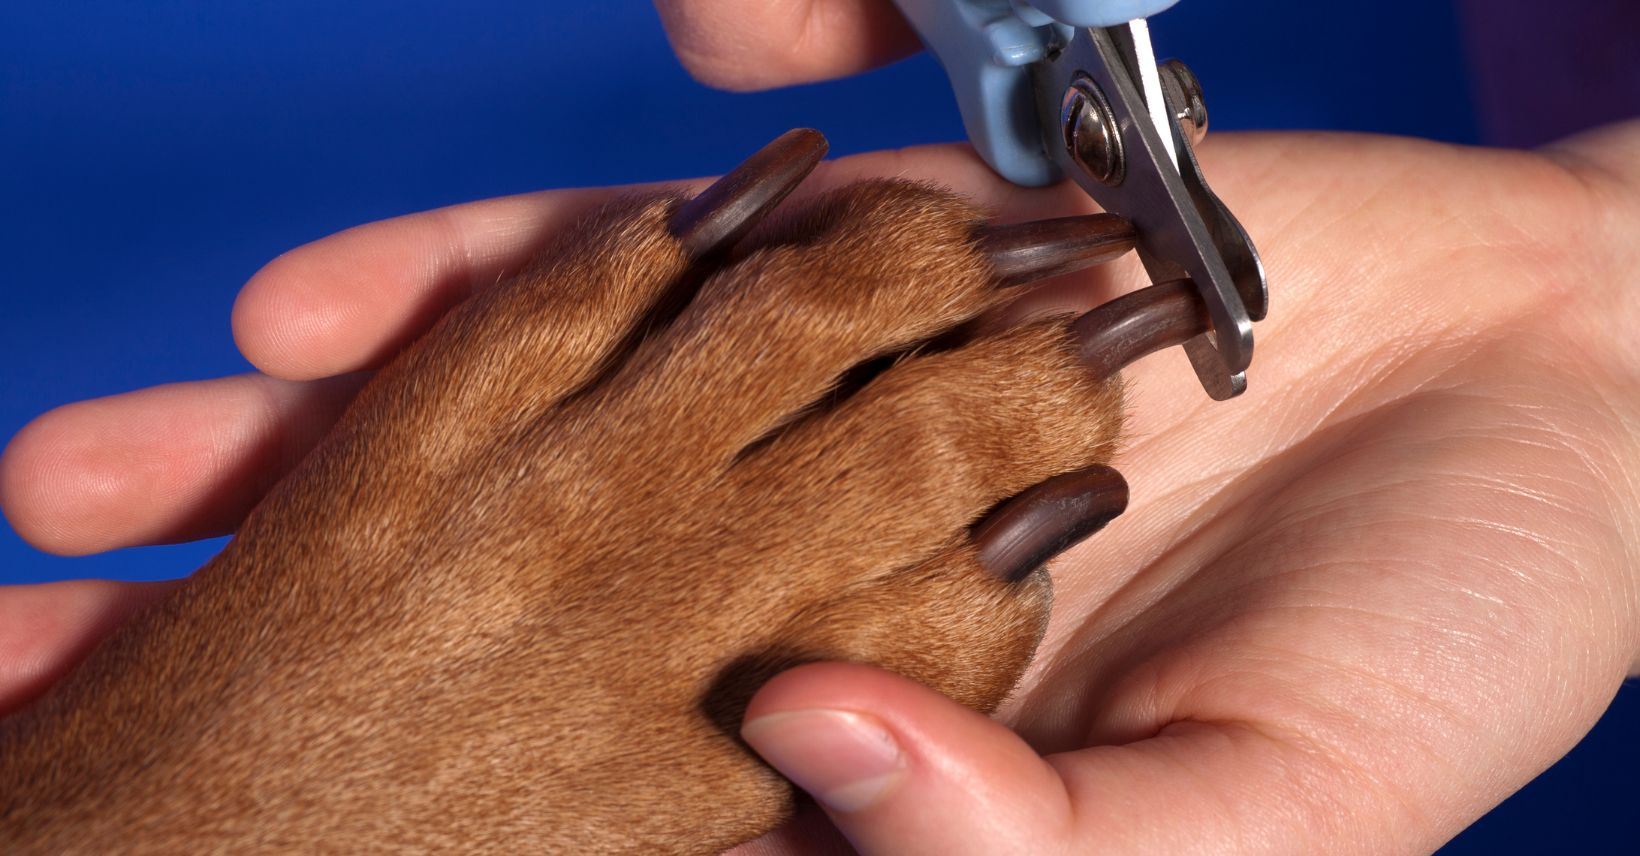 dog's nails dog nails, overgrown nails, dog nail, trim dog nails, overgrown dog nails, dog's nails, nail trimming, dog nail, nails trimmed, dog's nail, nail trims, dogs nails, dog nail clippers, trimming dog nails, trim dog nails, nail clippers, black nails, styptic powder, dog's nails, nail trimming, dog nail